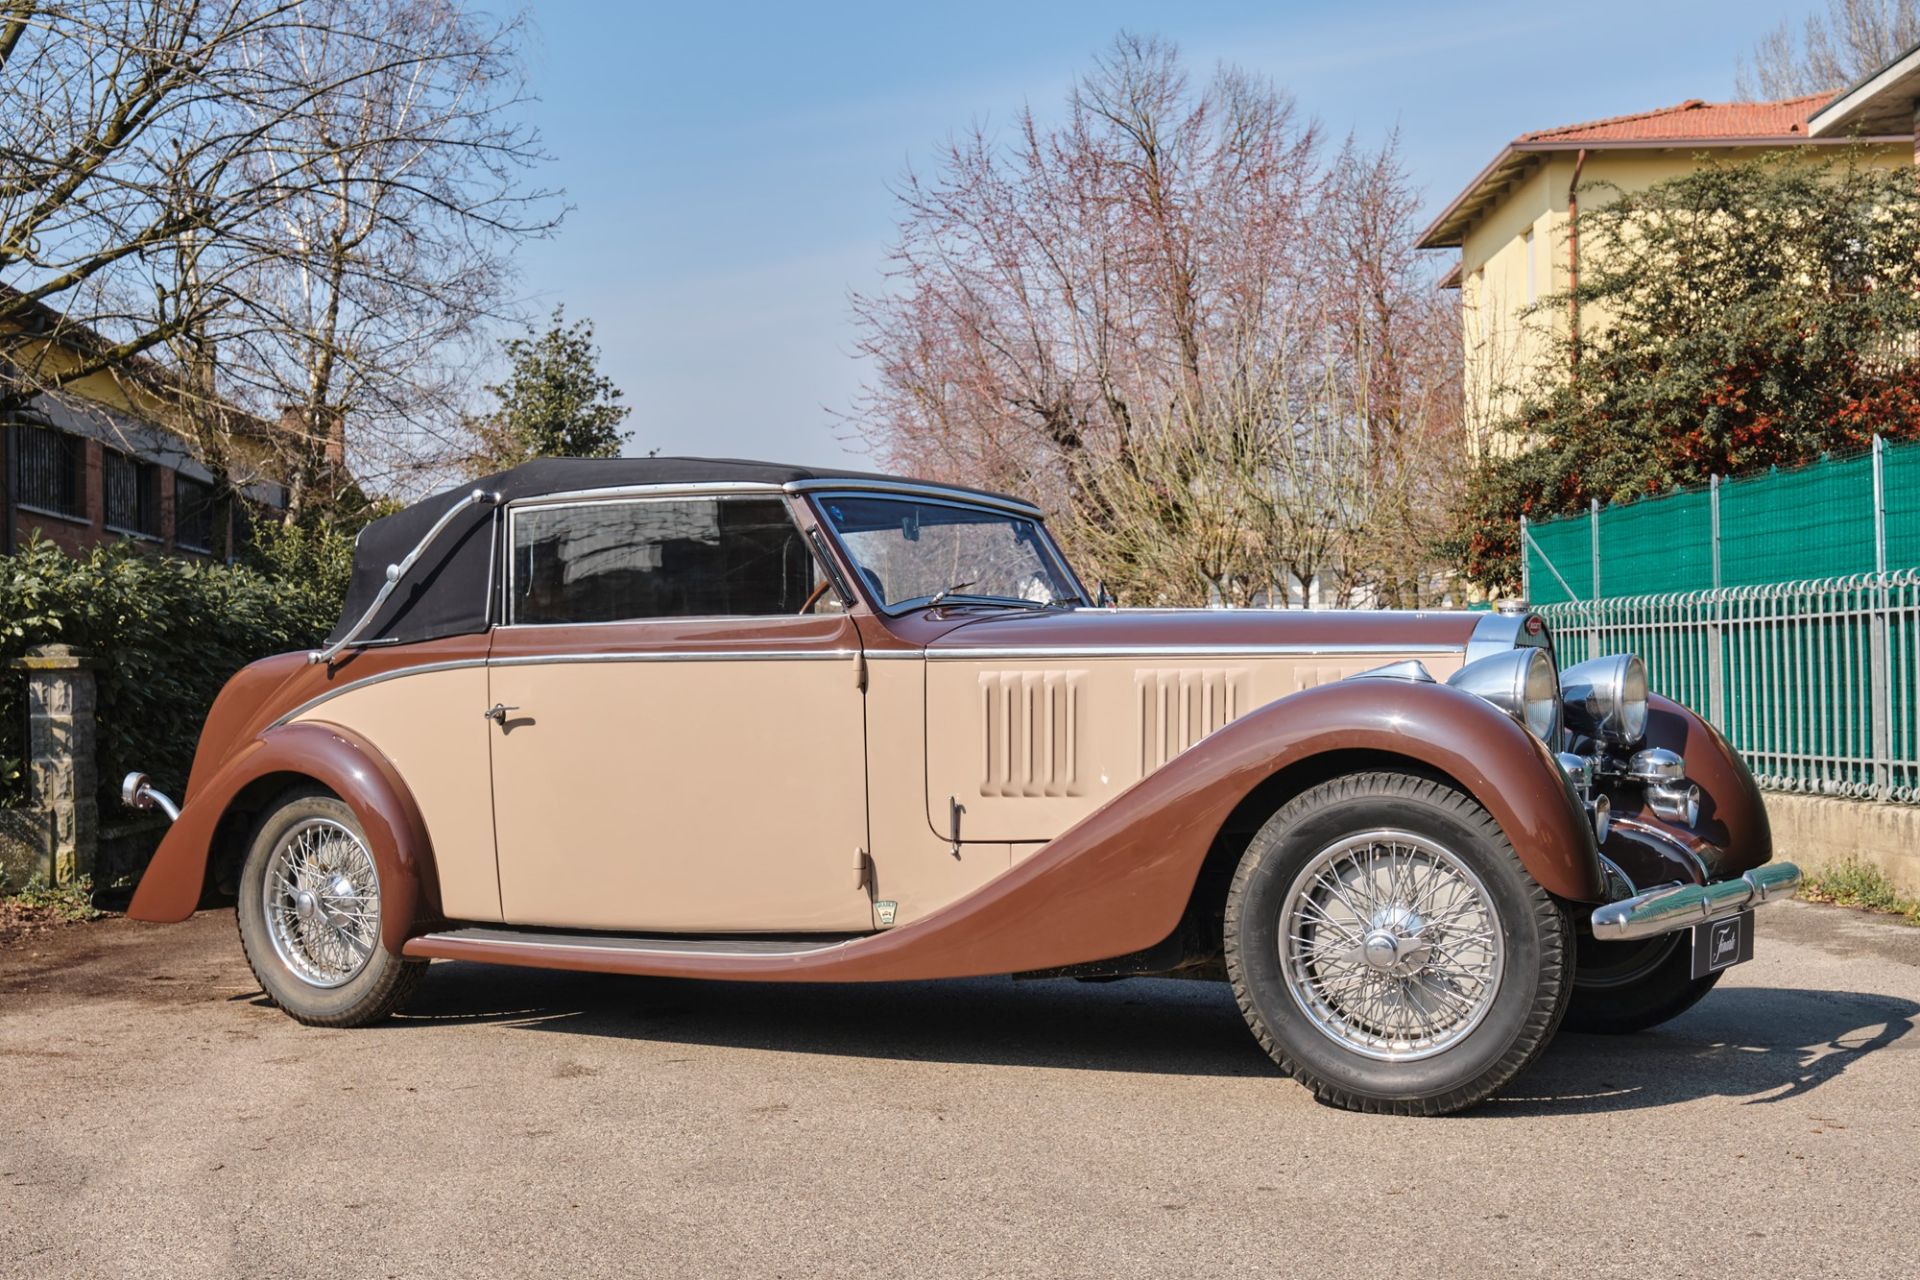 1936 Bugatti 57 cabriolet (Graber) - Image 6 of 13